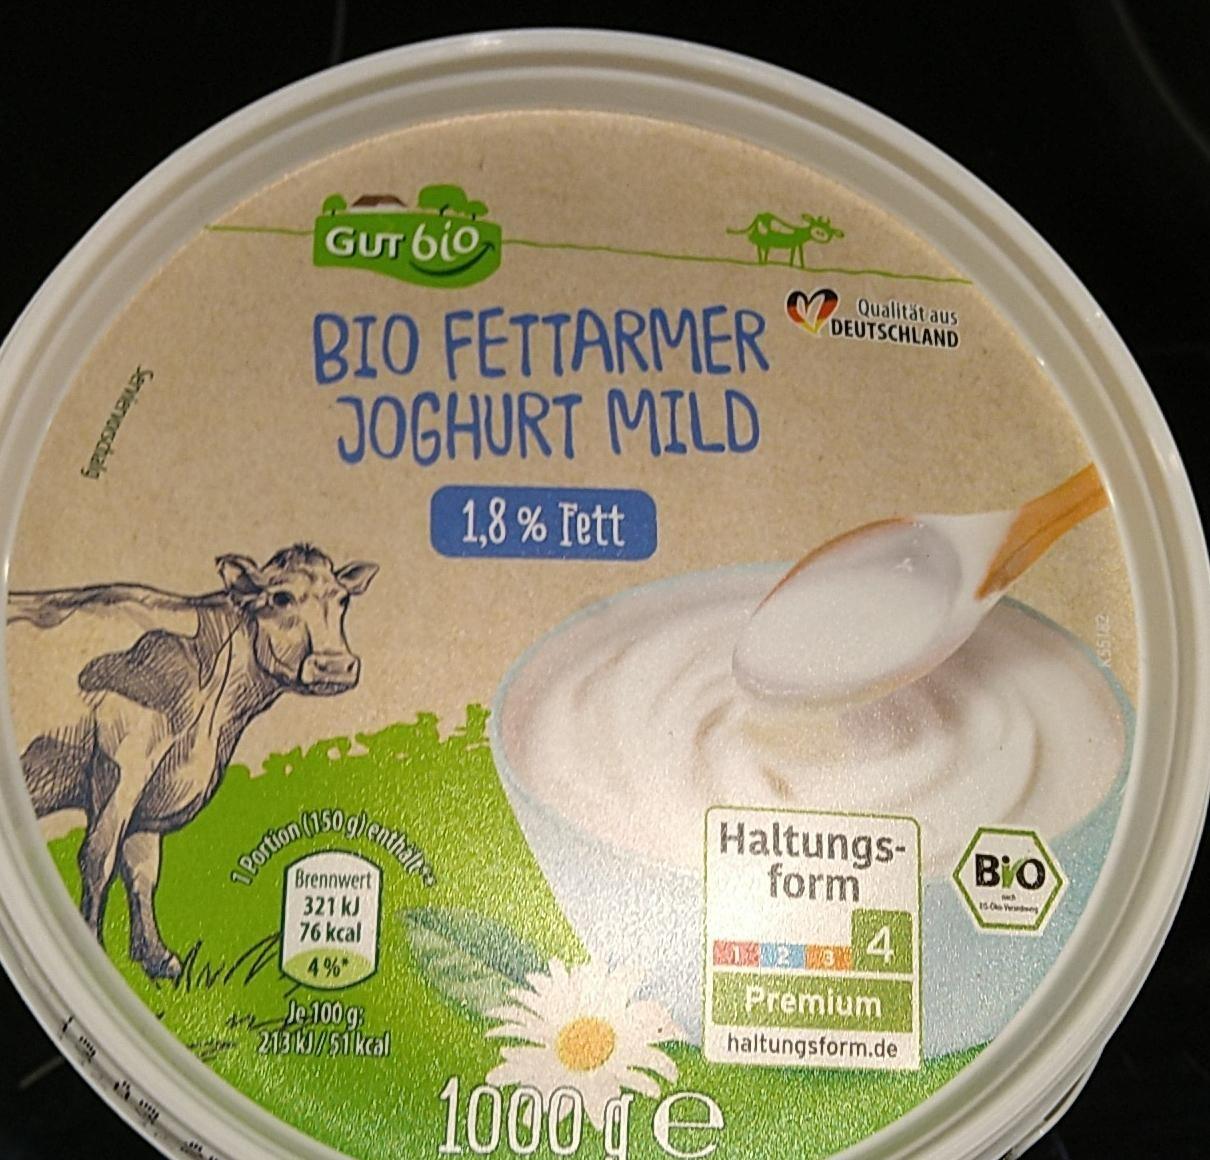 Fotografie - Bio Fettarmer Joghurt mild 1,8% Fett GutBio